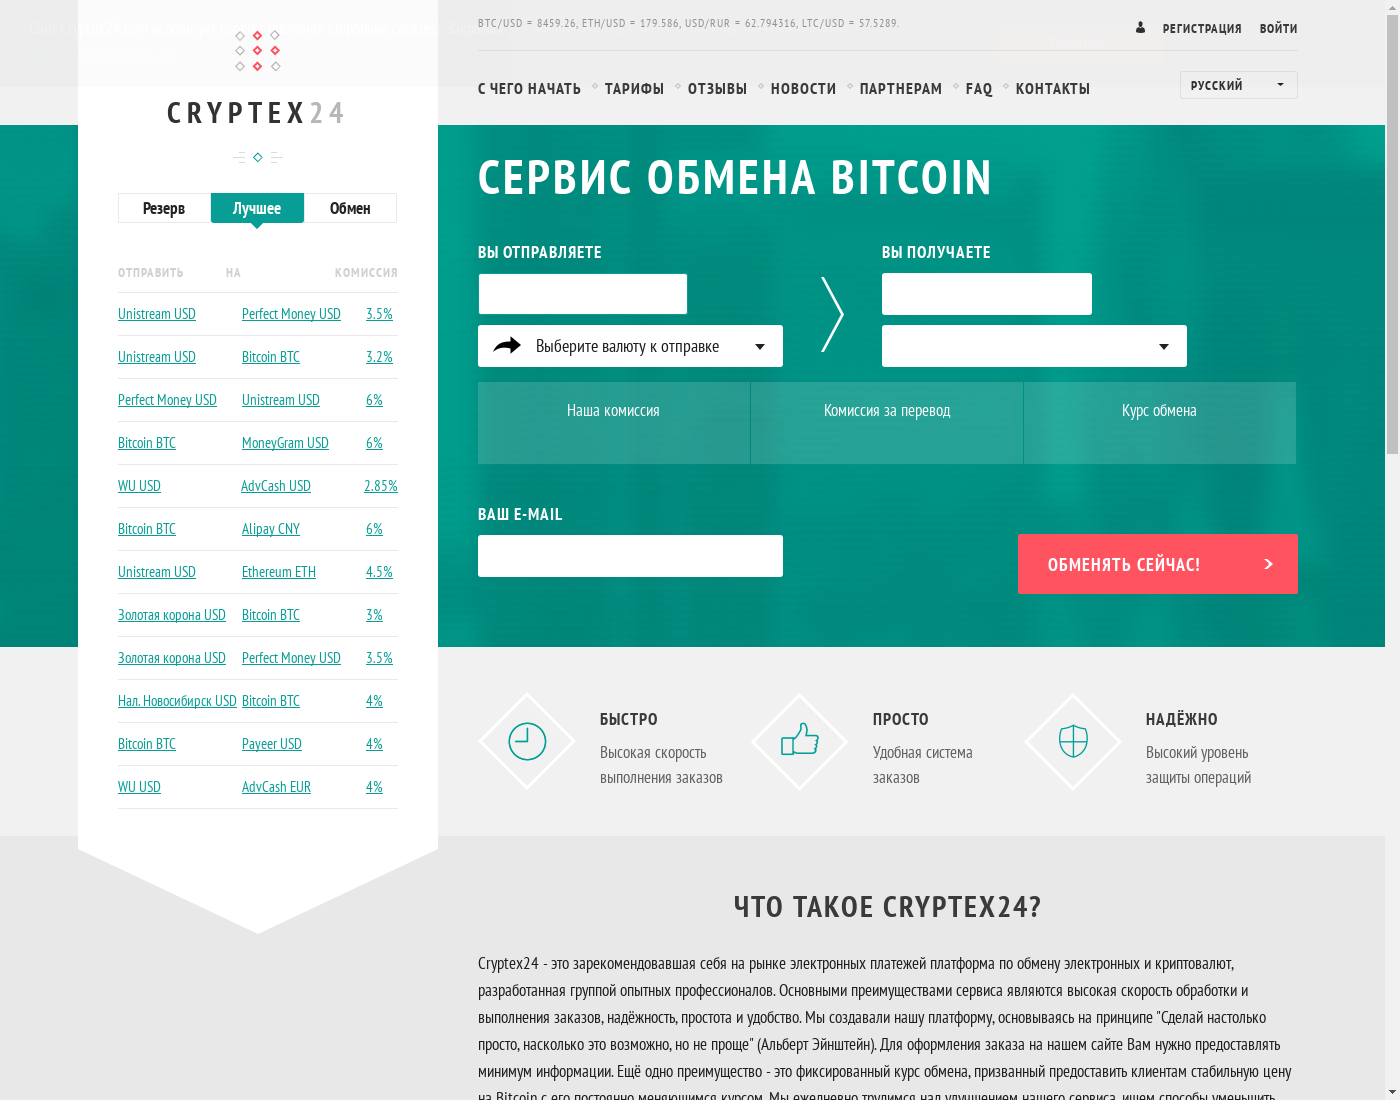 Cryptex24 интерфейс пользователя: домашняя страничка на языке — Русский